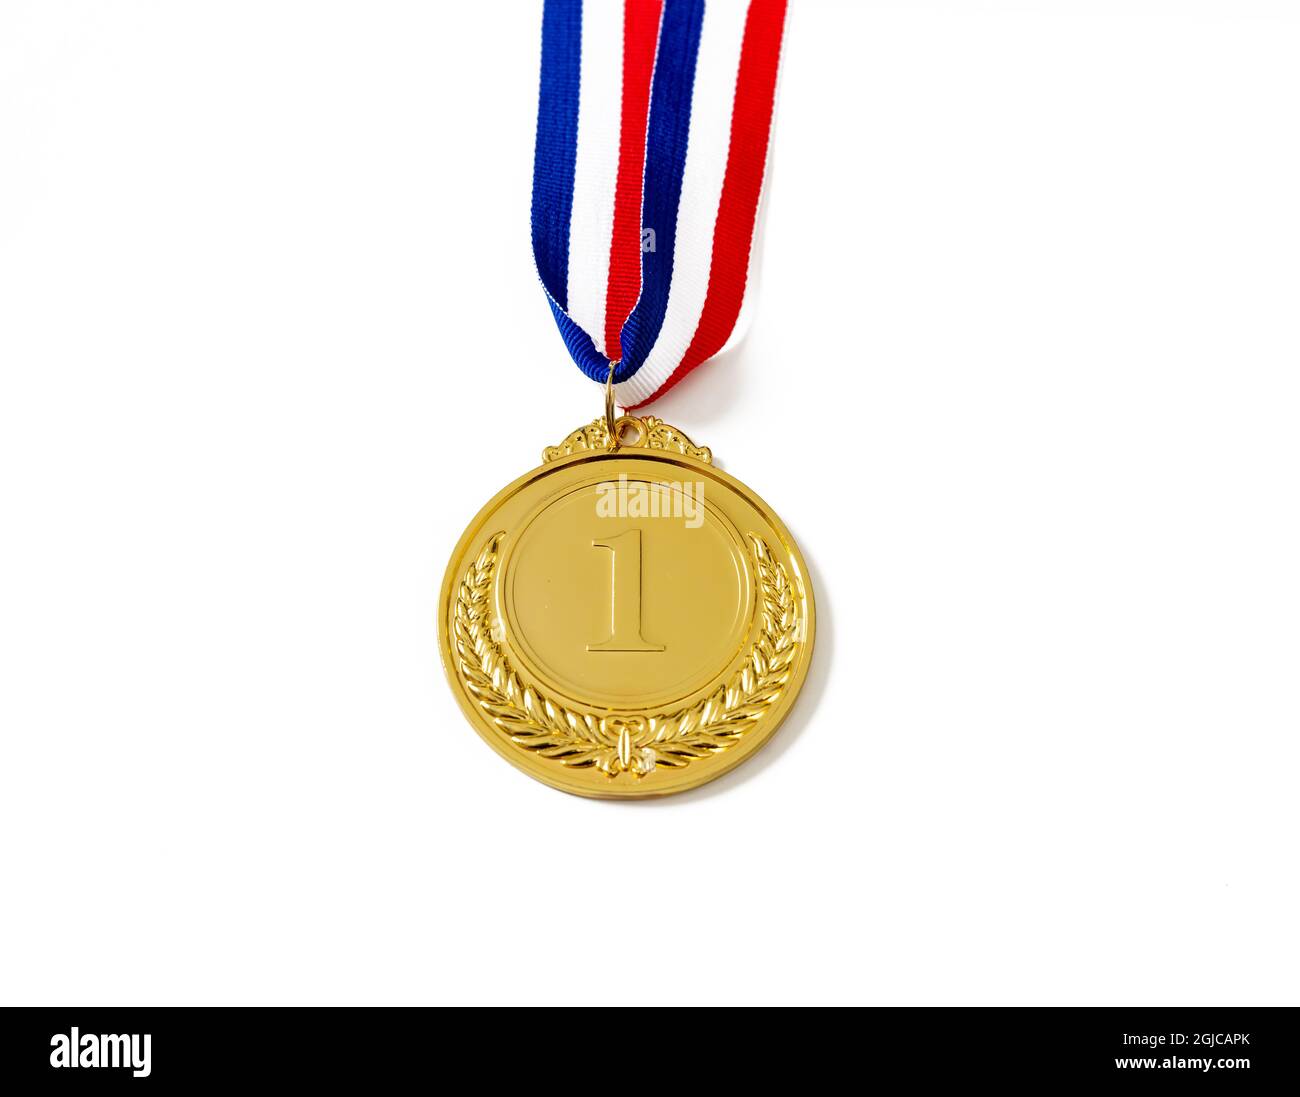 Lote de premios de oro, trofeo de la medalla de oro, premios